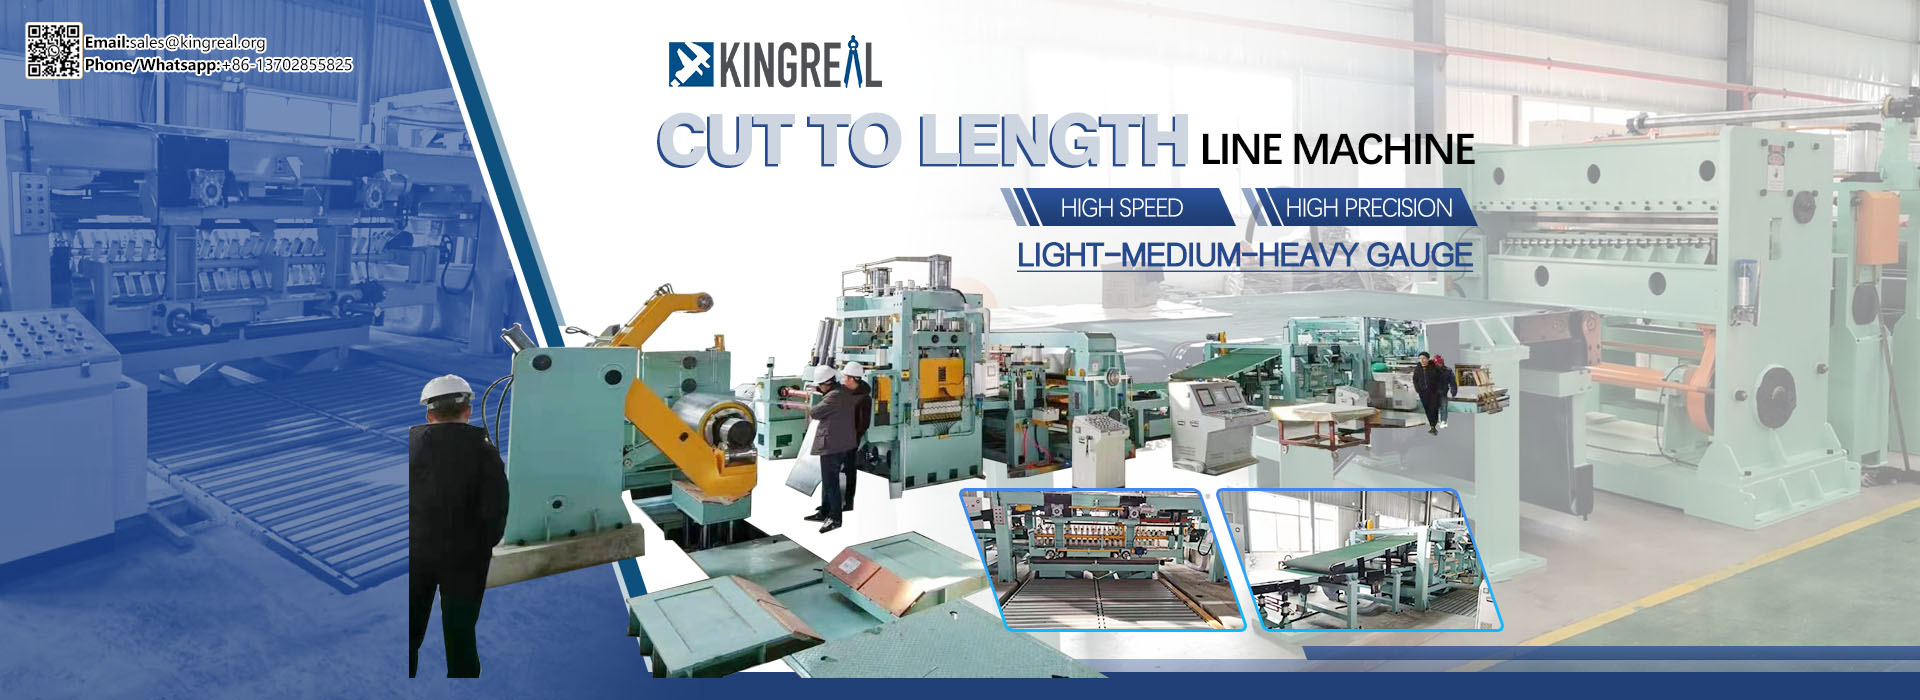 Trung Quốc Nhà cung cấp dây chuyền sản xuất cắt theo chiều dài